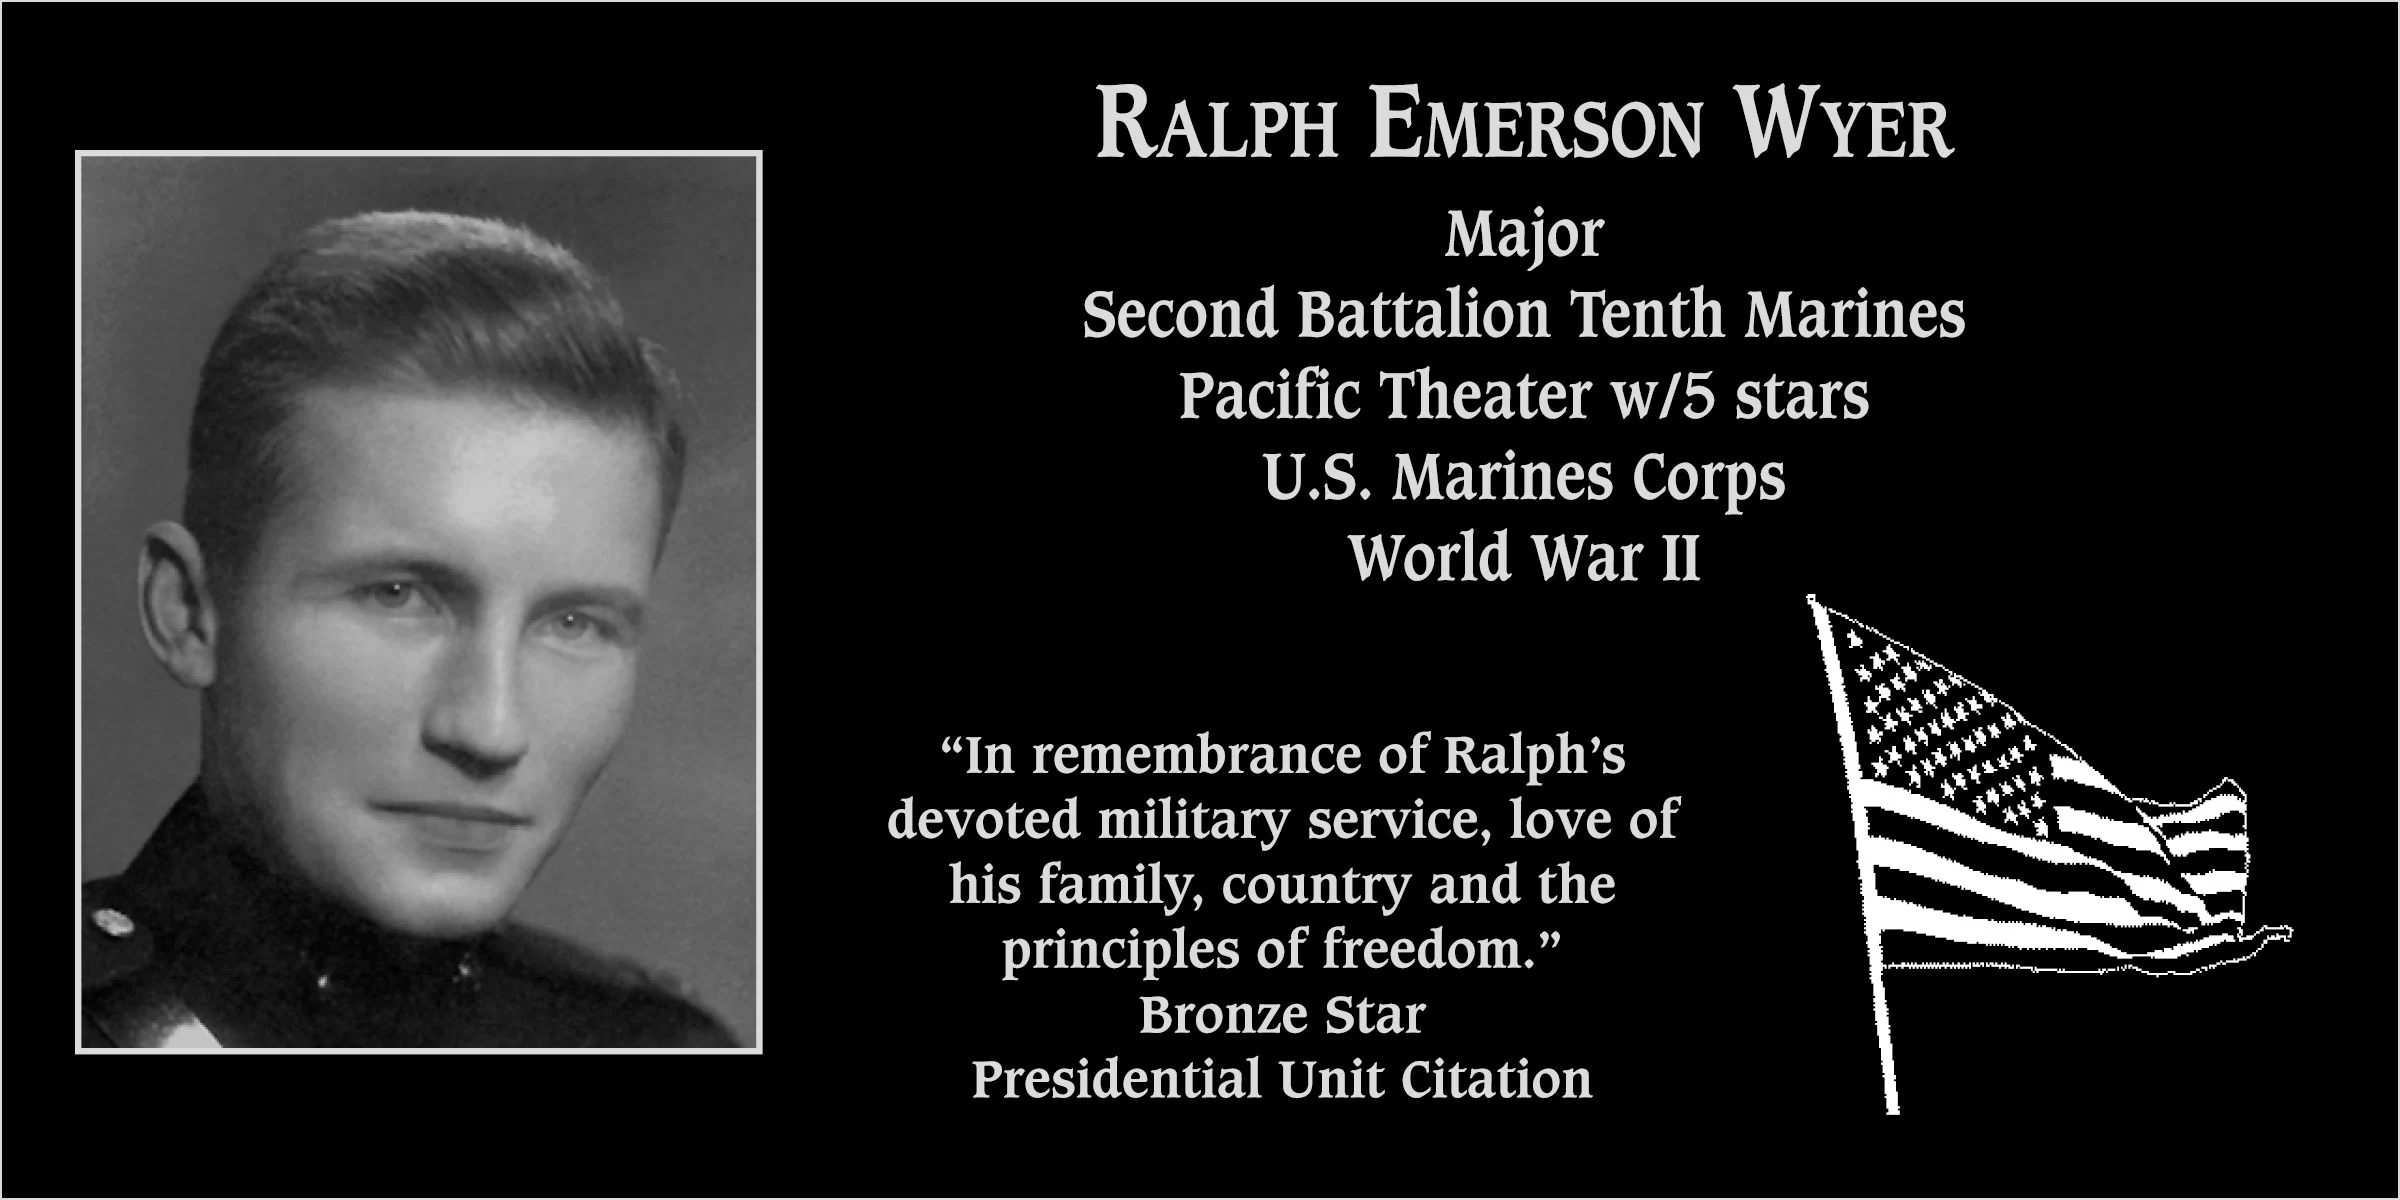 Ralph Emerson Wyer